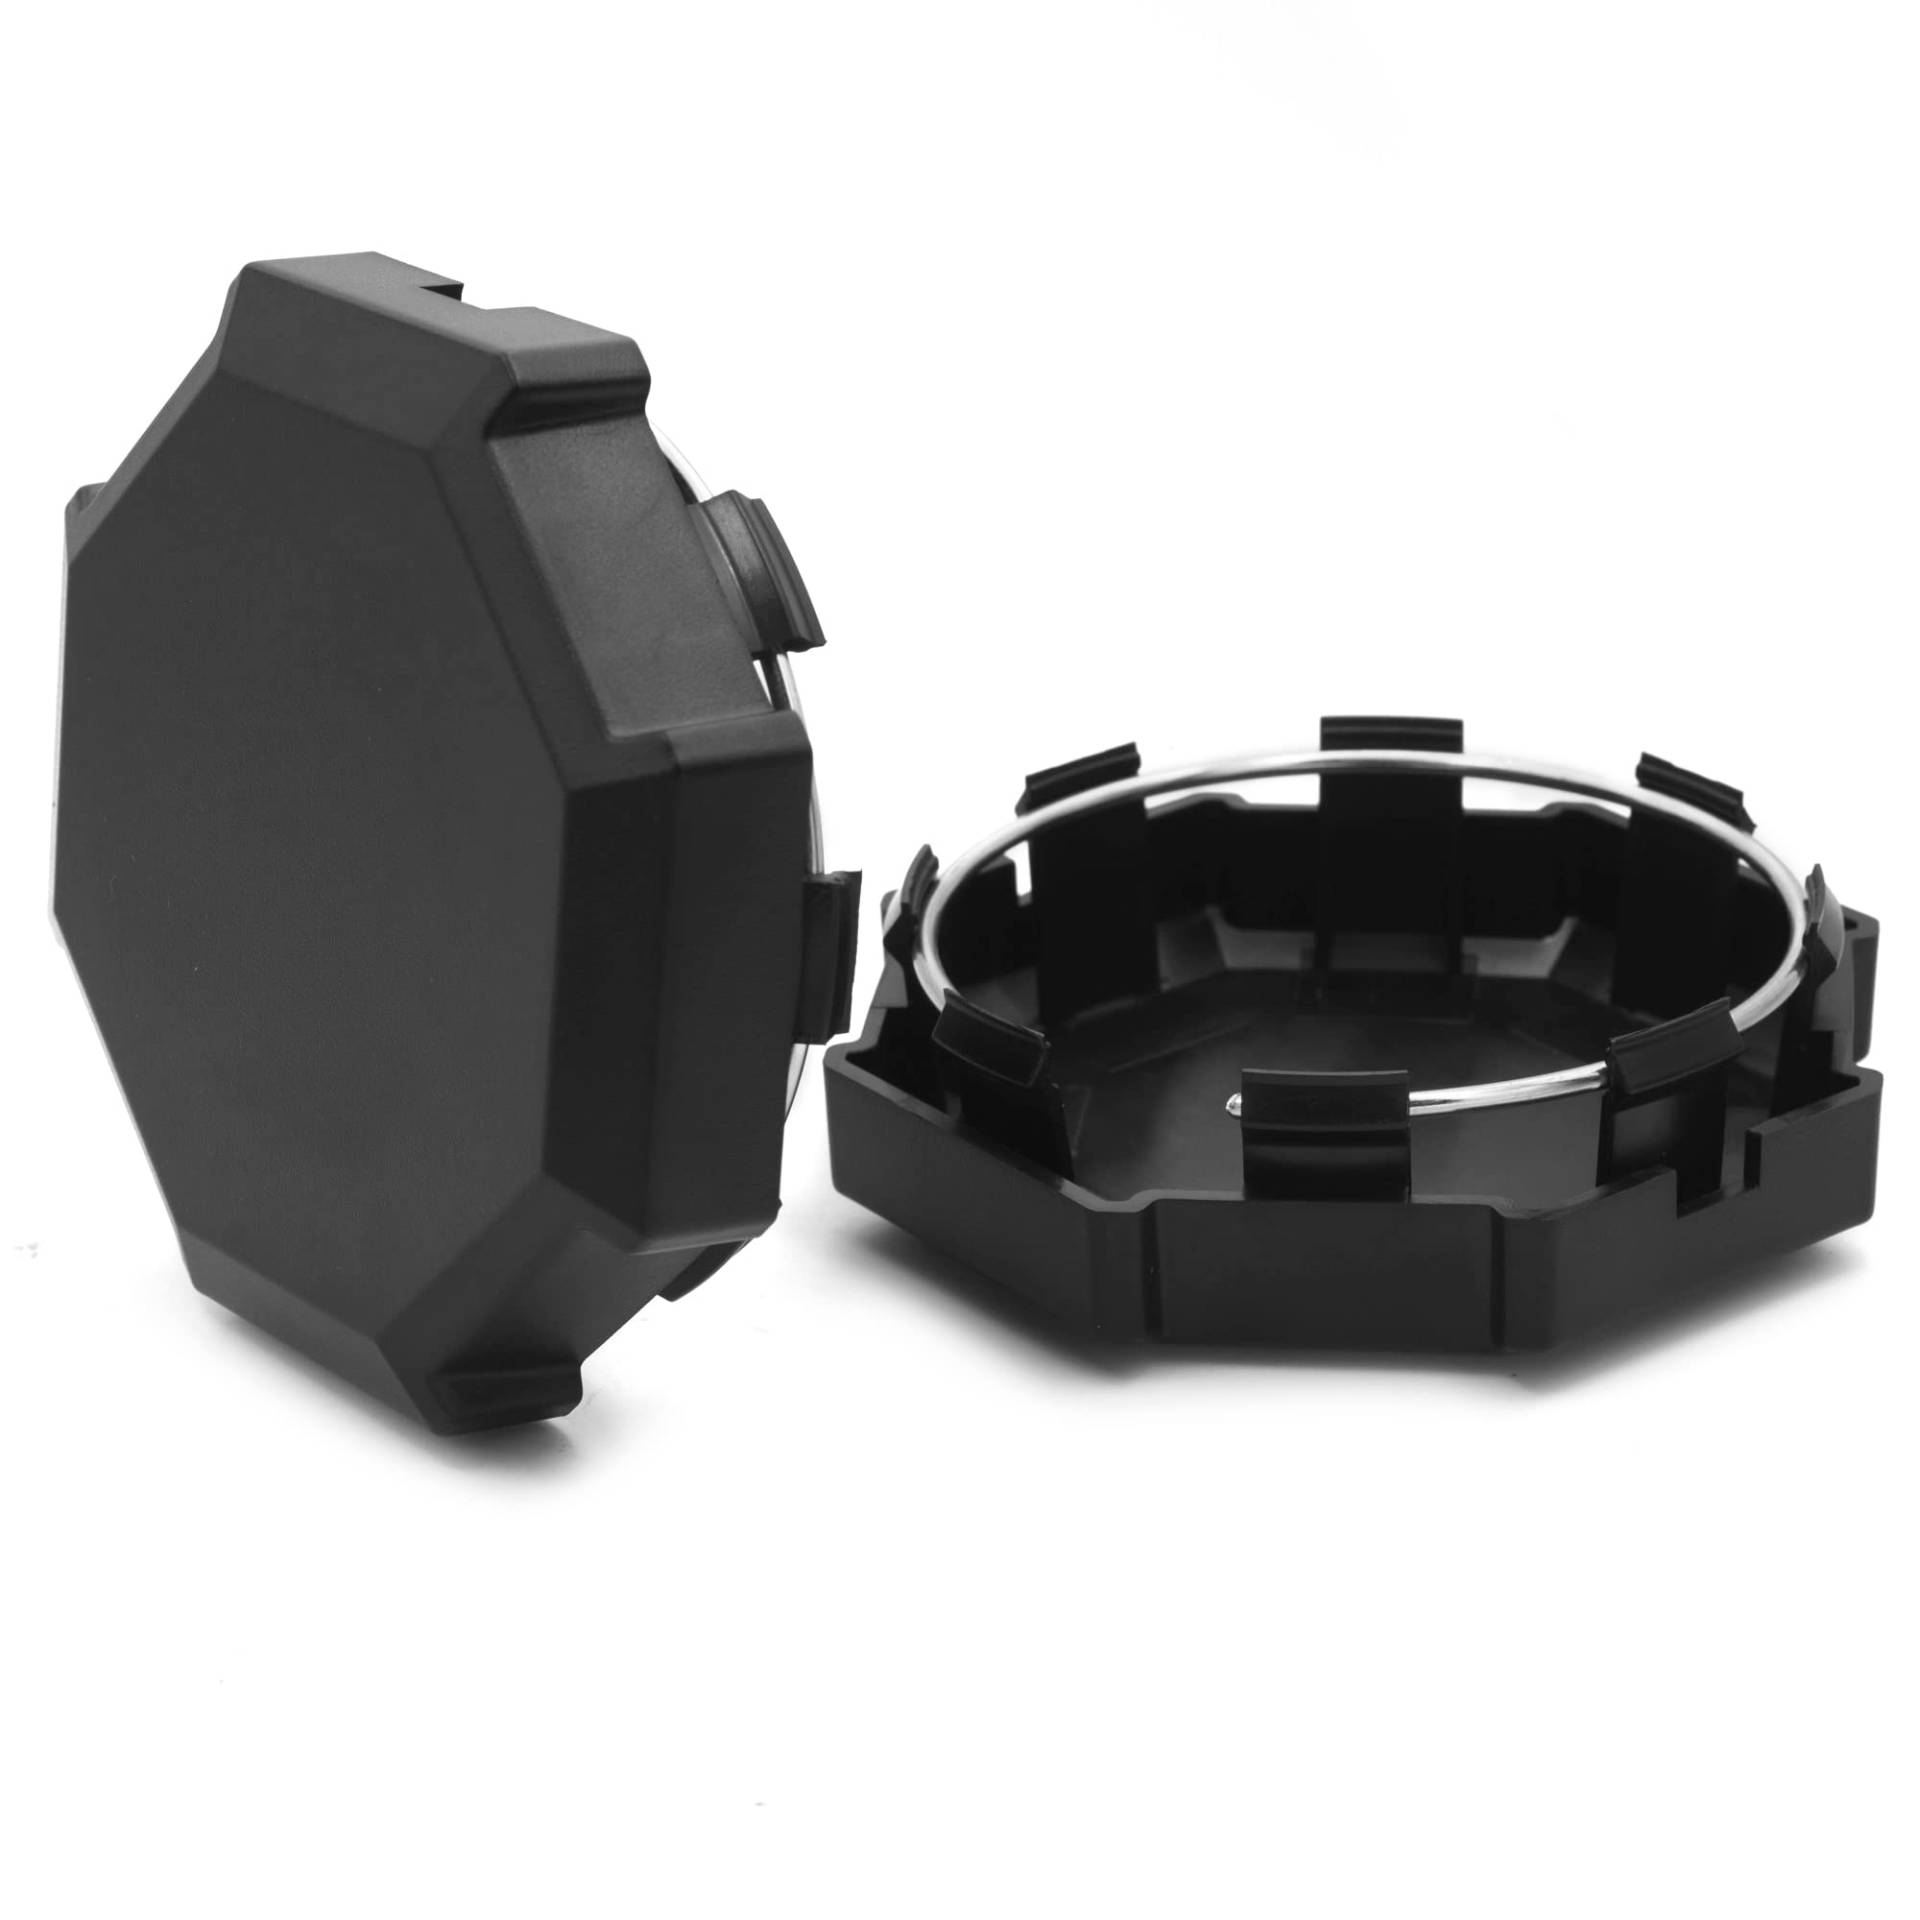 98 mm/3,86 Zoll Schwarze Nabenkappen passend für Polaris RZR #9001000XP4 von Rhinotuning